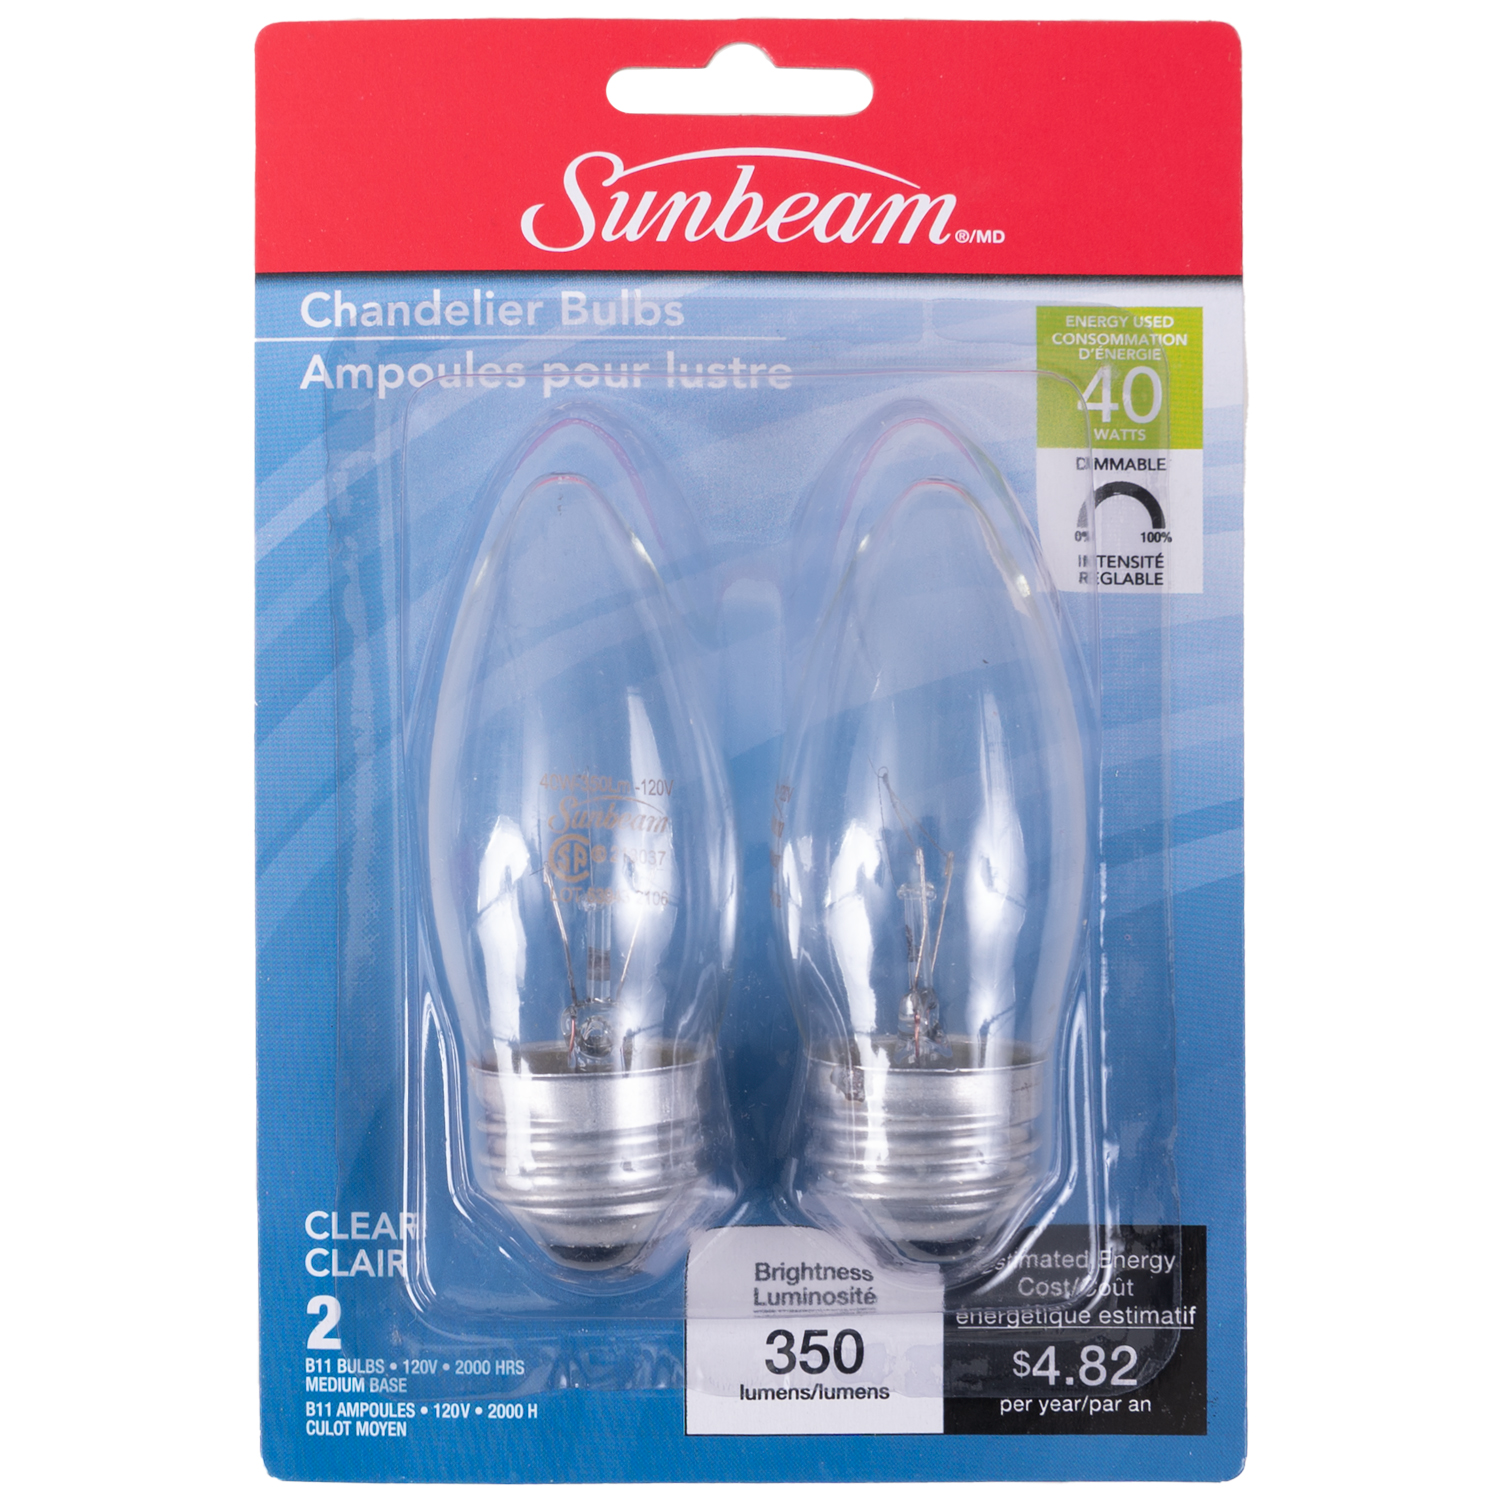 Sunbeam - Chandelier incandescent light bulbs, 40W, 2-pk